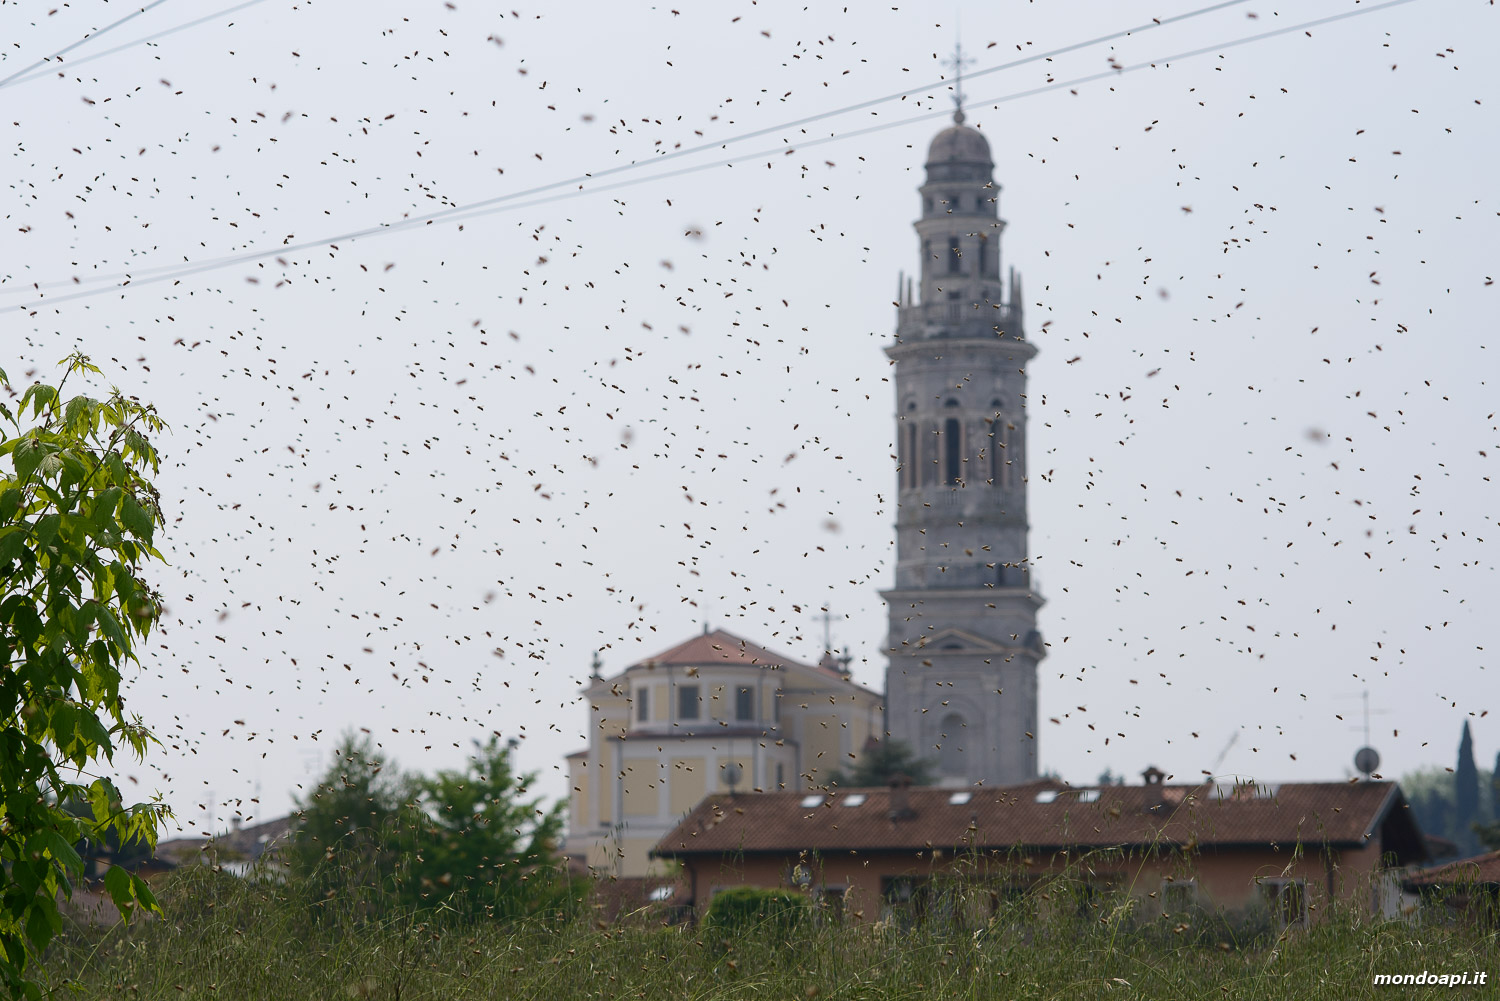 Le api di uno sciame in volo, sullo sfondo la chiesa di Pescantina